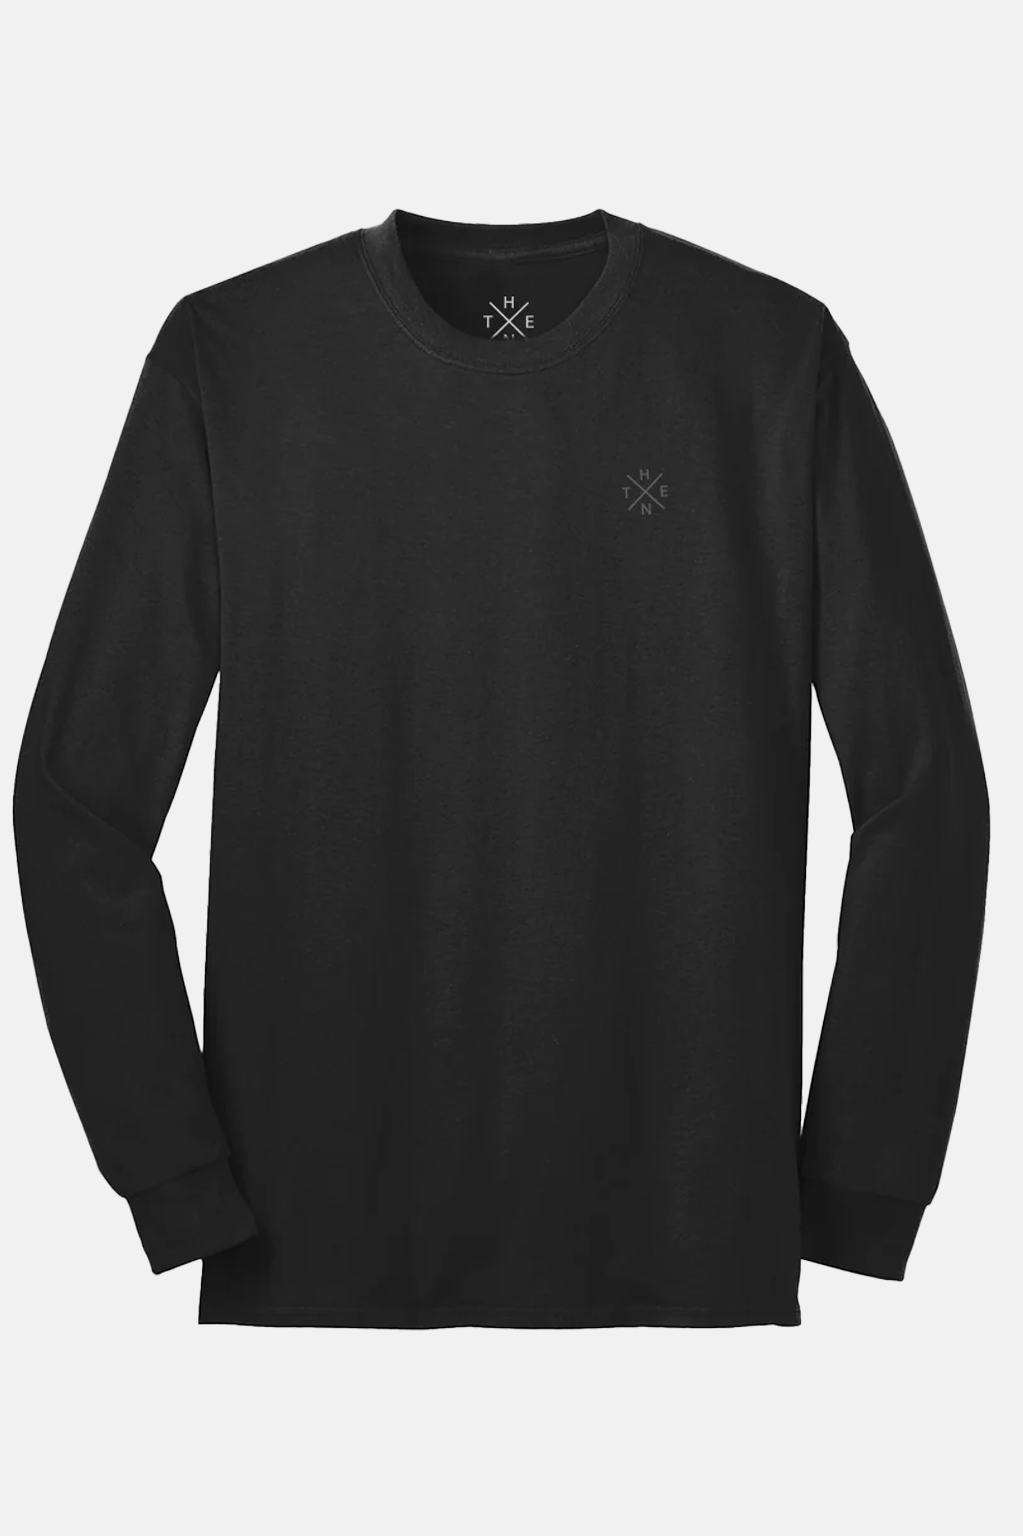 Thenx 3M XX Long Sleeve T-Shirt - Black - THENX